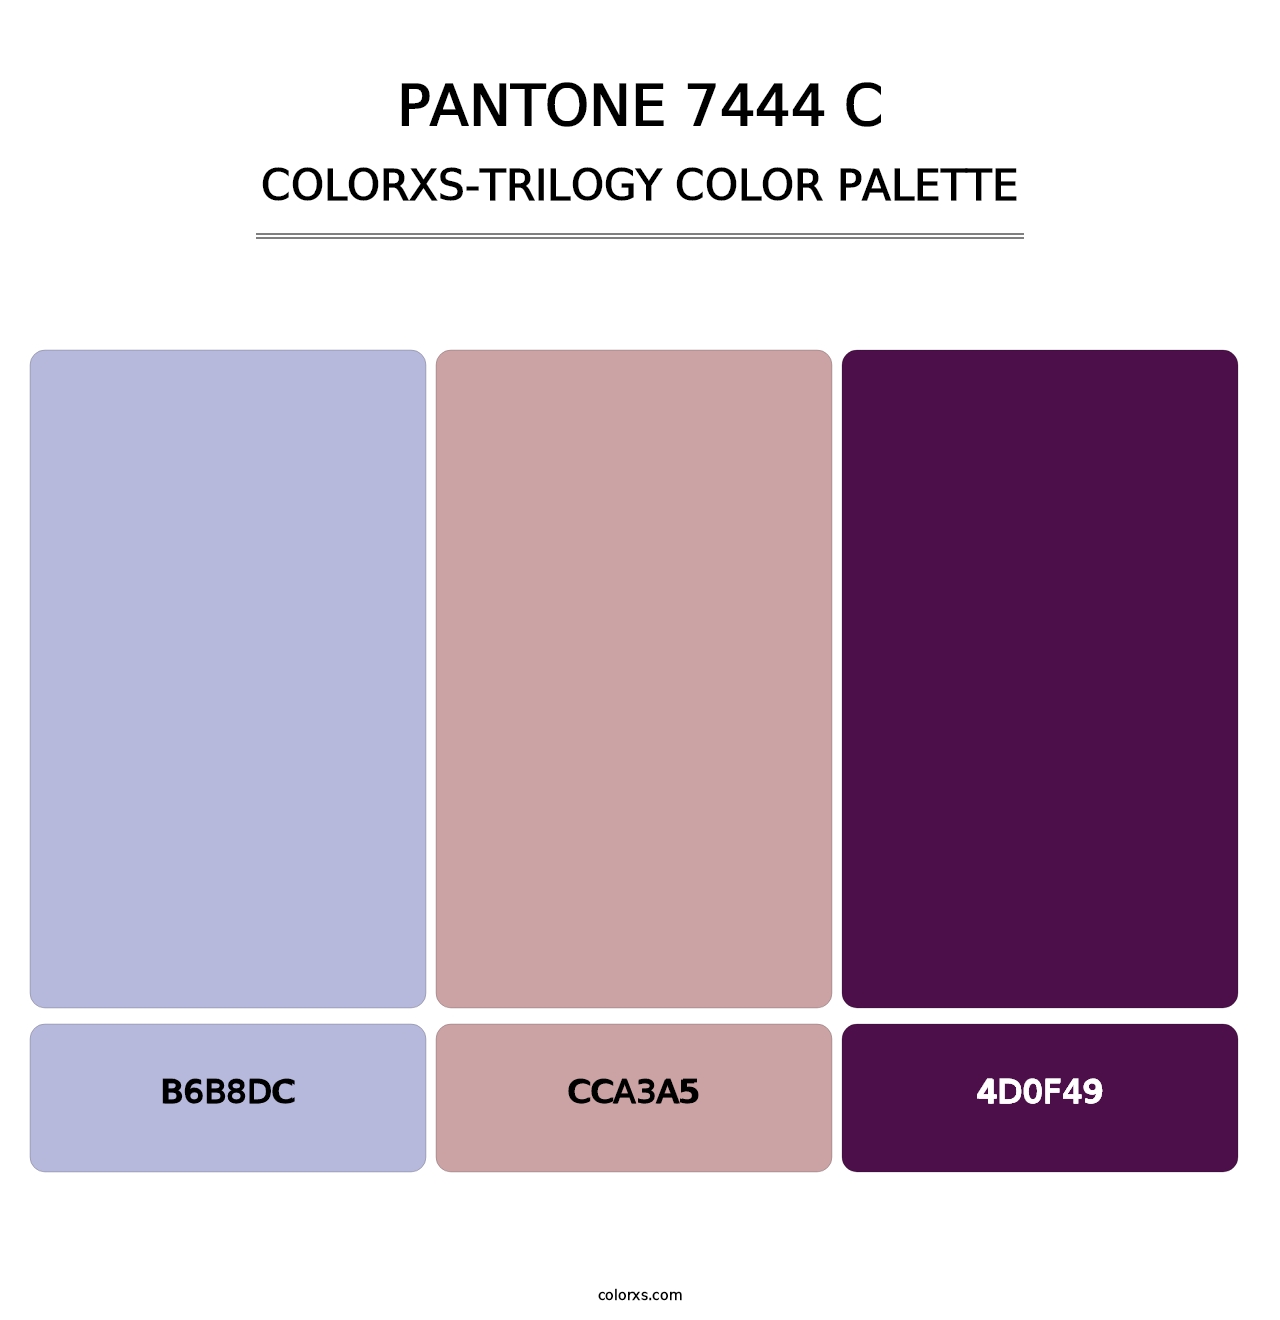 PANTONE 7444 C - Colorxs Trilogy Palette